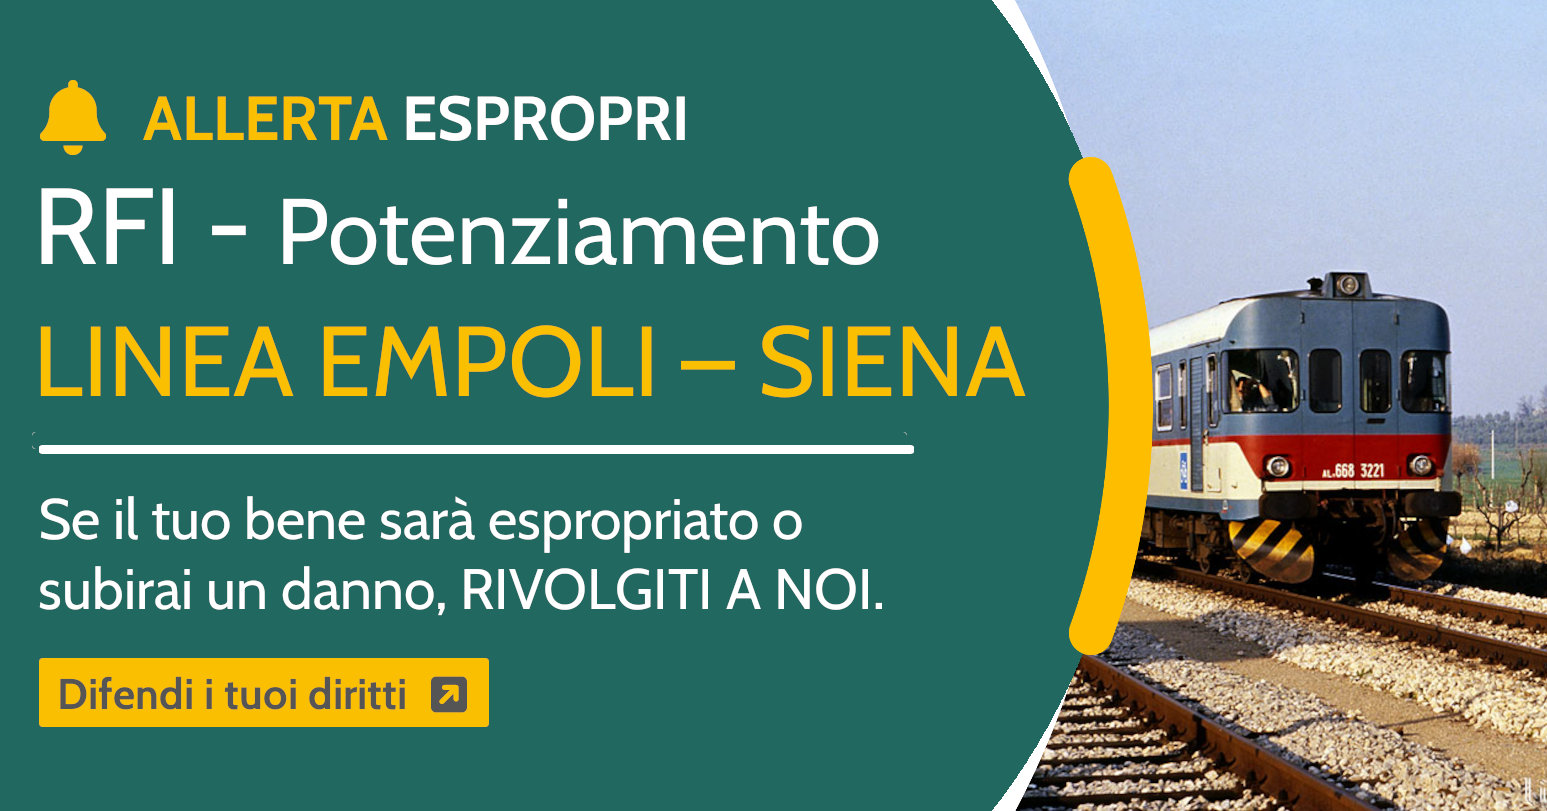 Espropri Potenziamento Linea Empoli-Siena. Come difendersi?